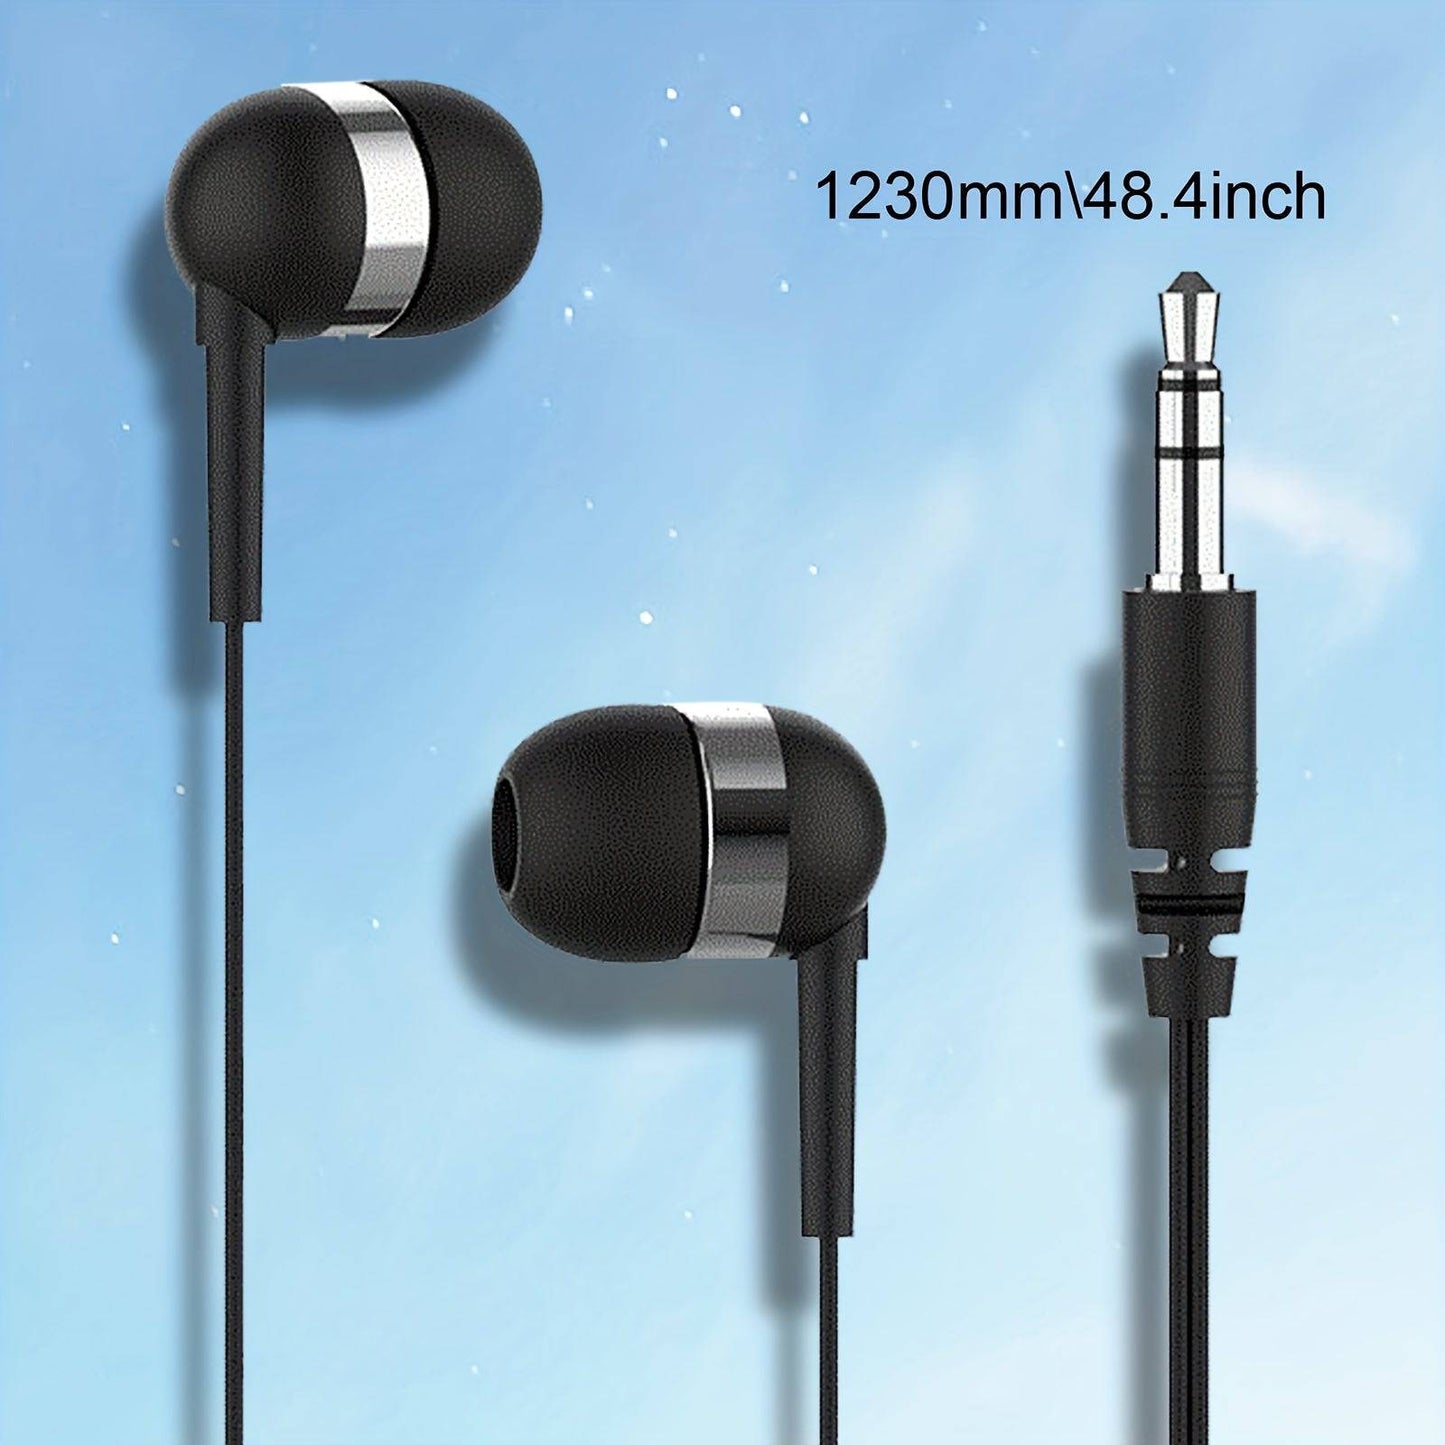 Präzise In-Ear-Ohrhörer mit Kabel und 3,5-mm-Schnittstelle.